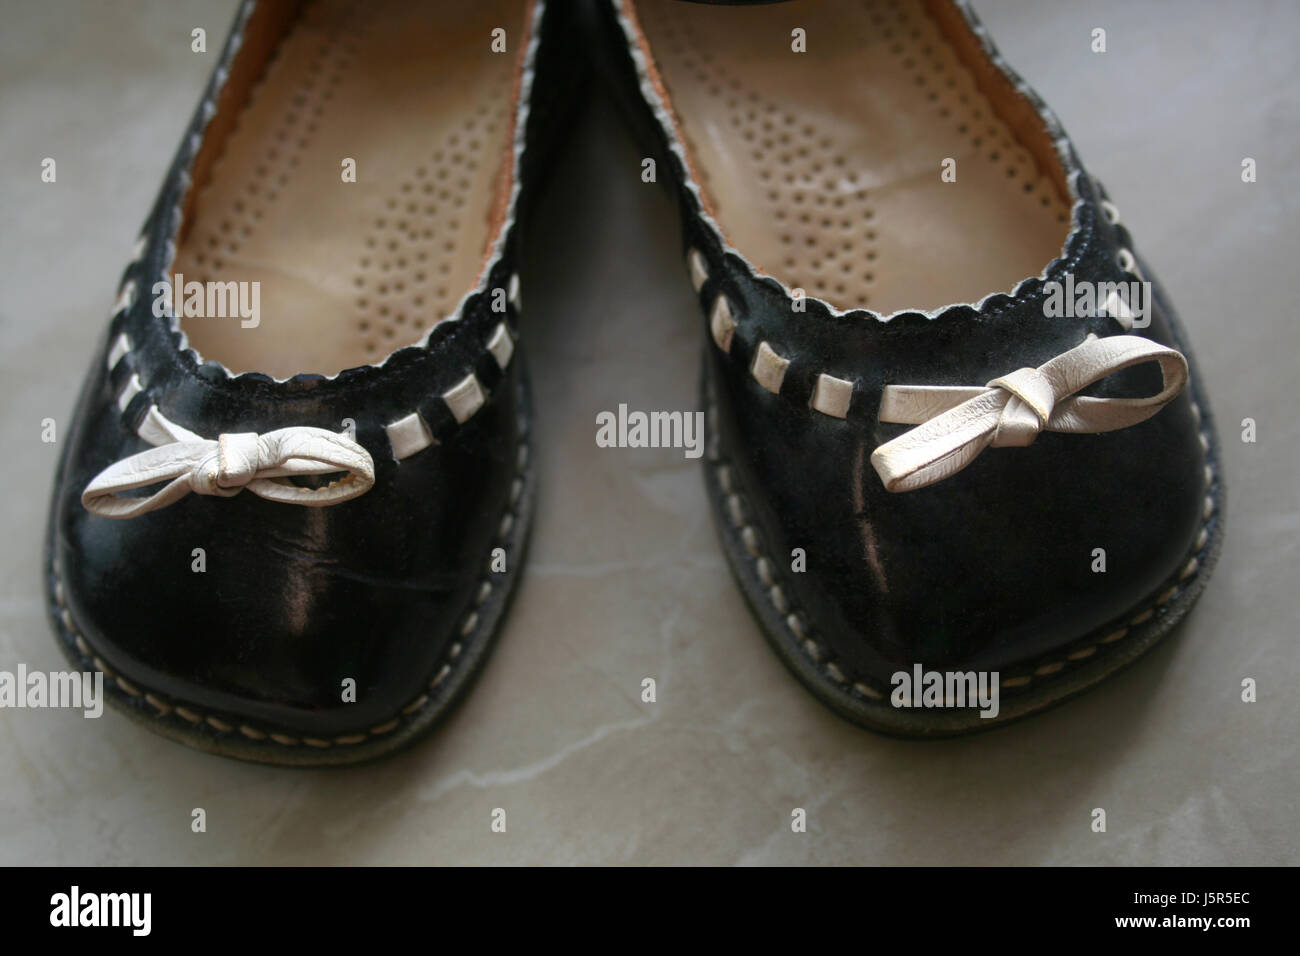 Braun bräunlich Brünette schwarze dunkelhäutige kohlschwarze tiefschwarze Schuhe leer zu gewinnen Stockfoto